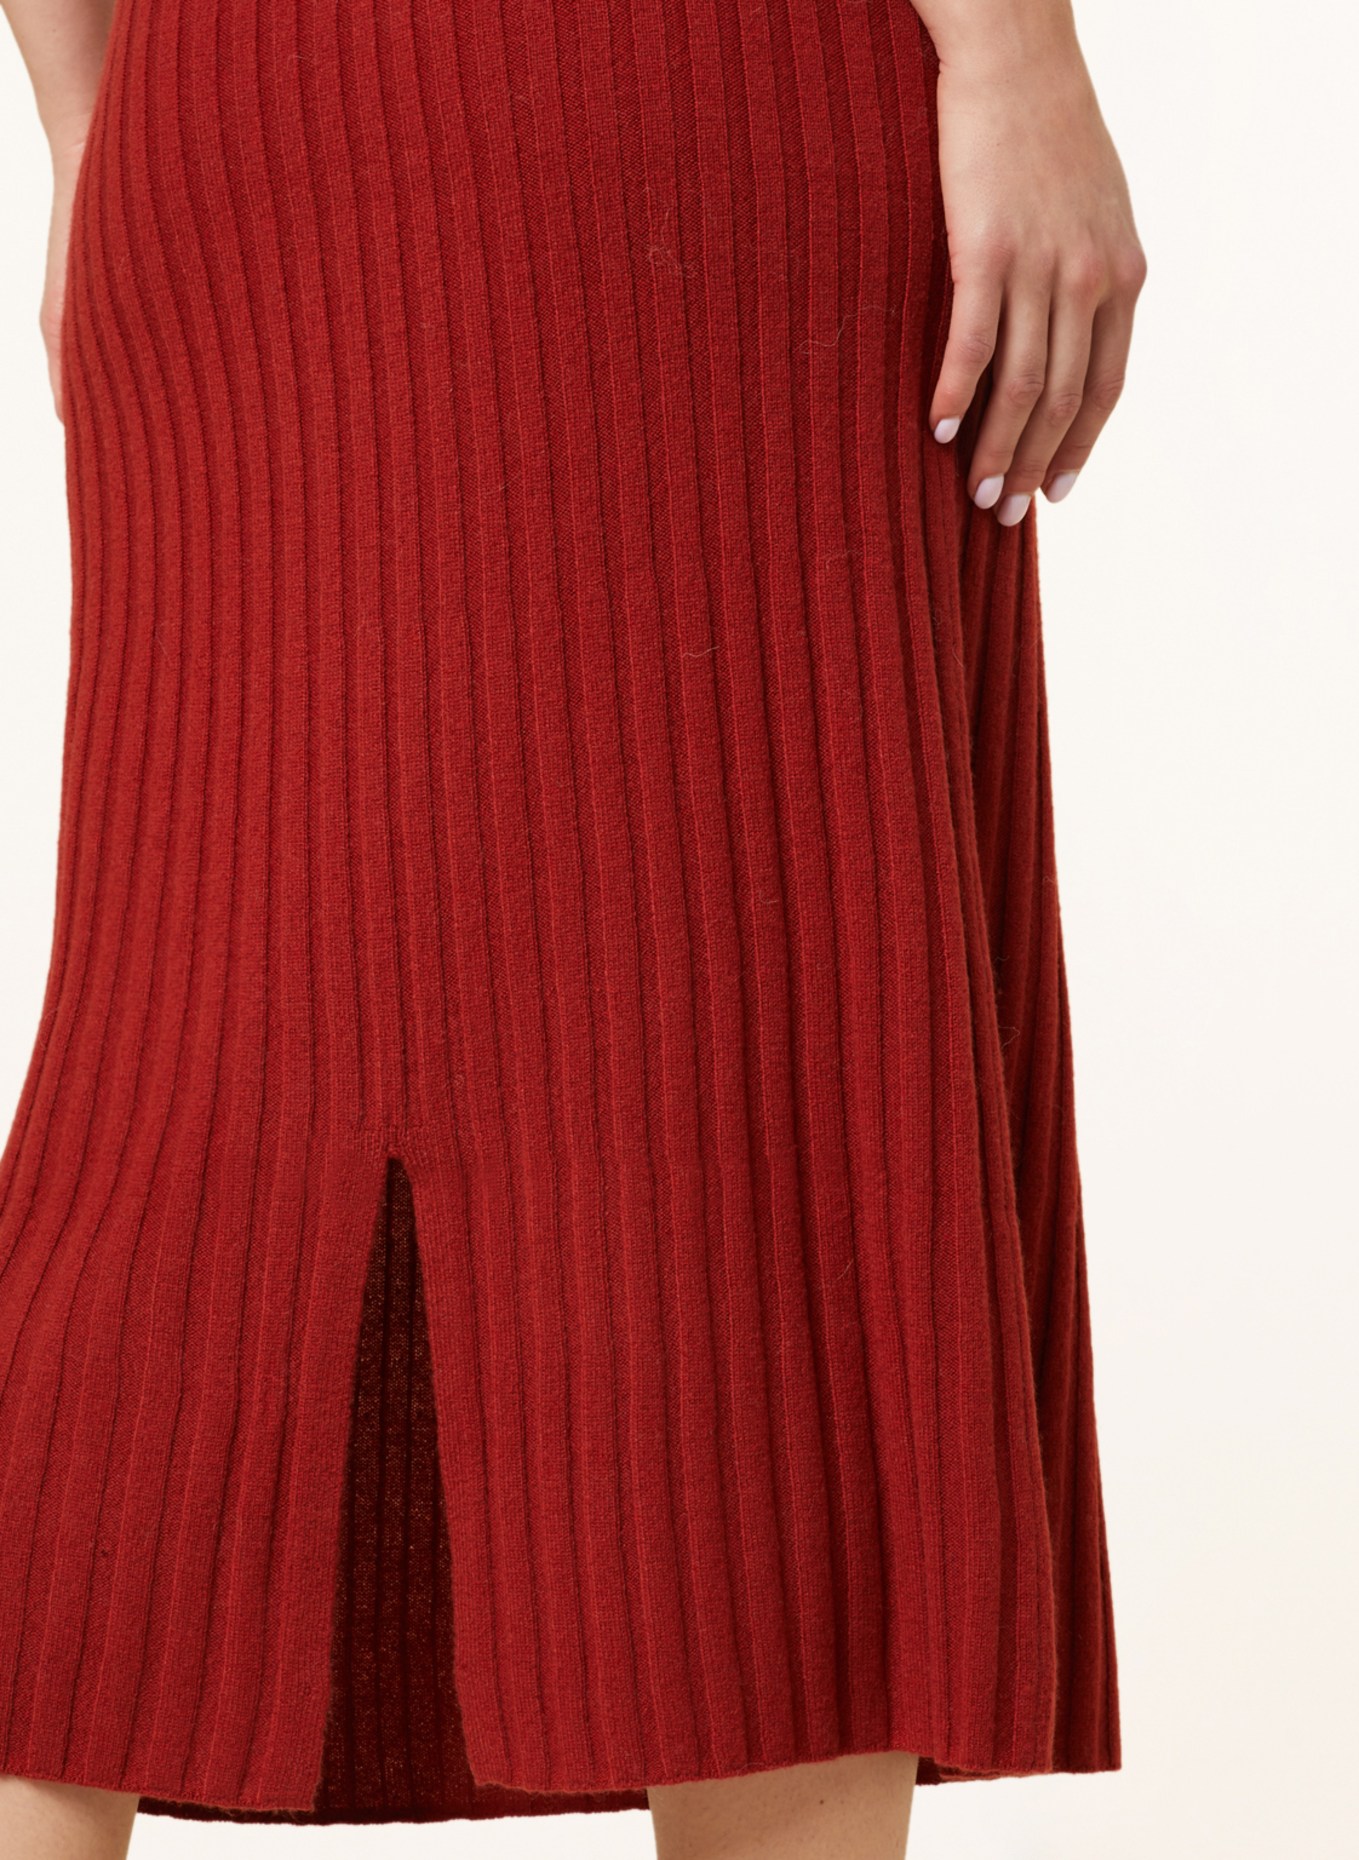 Delicatelove Knit skirt MELBOURNE made of cashmere, Color: DARK ORANGE (Image 4)